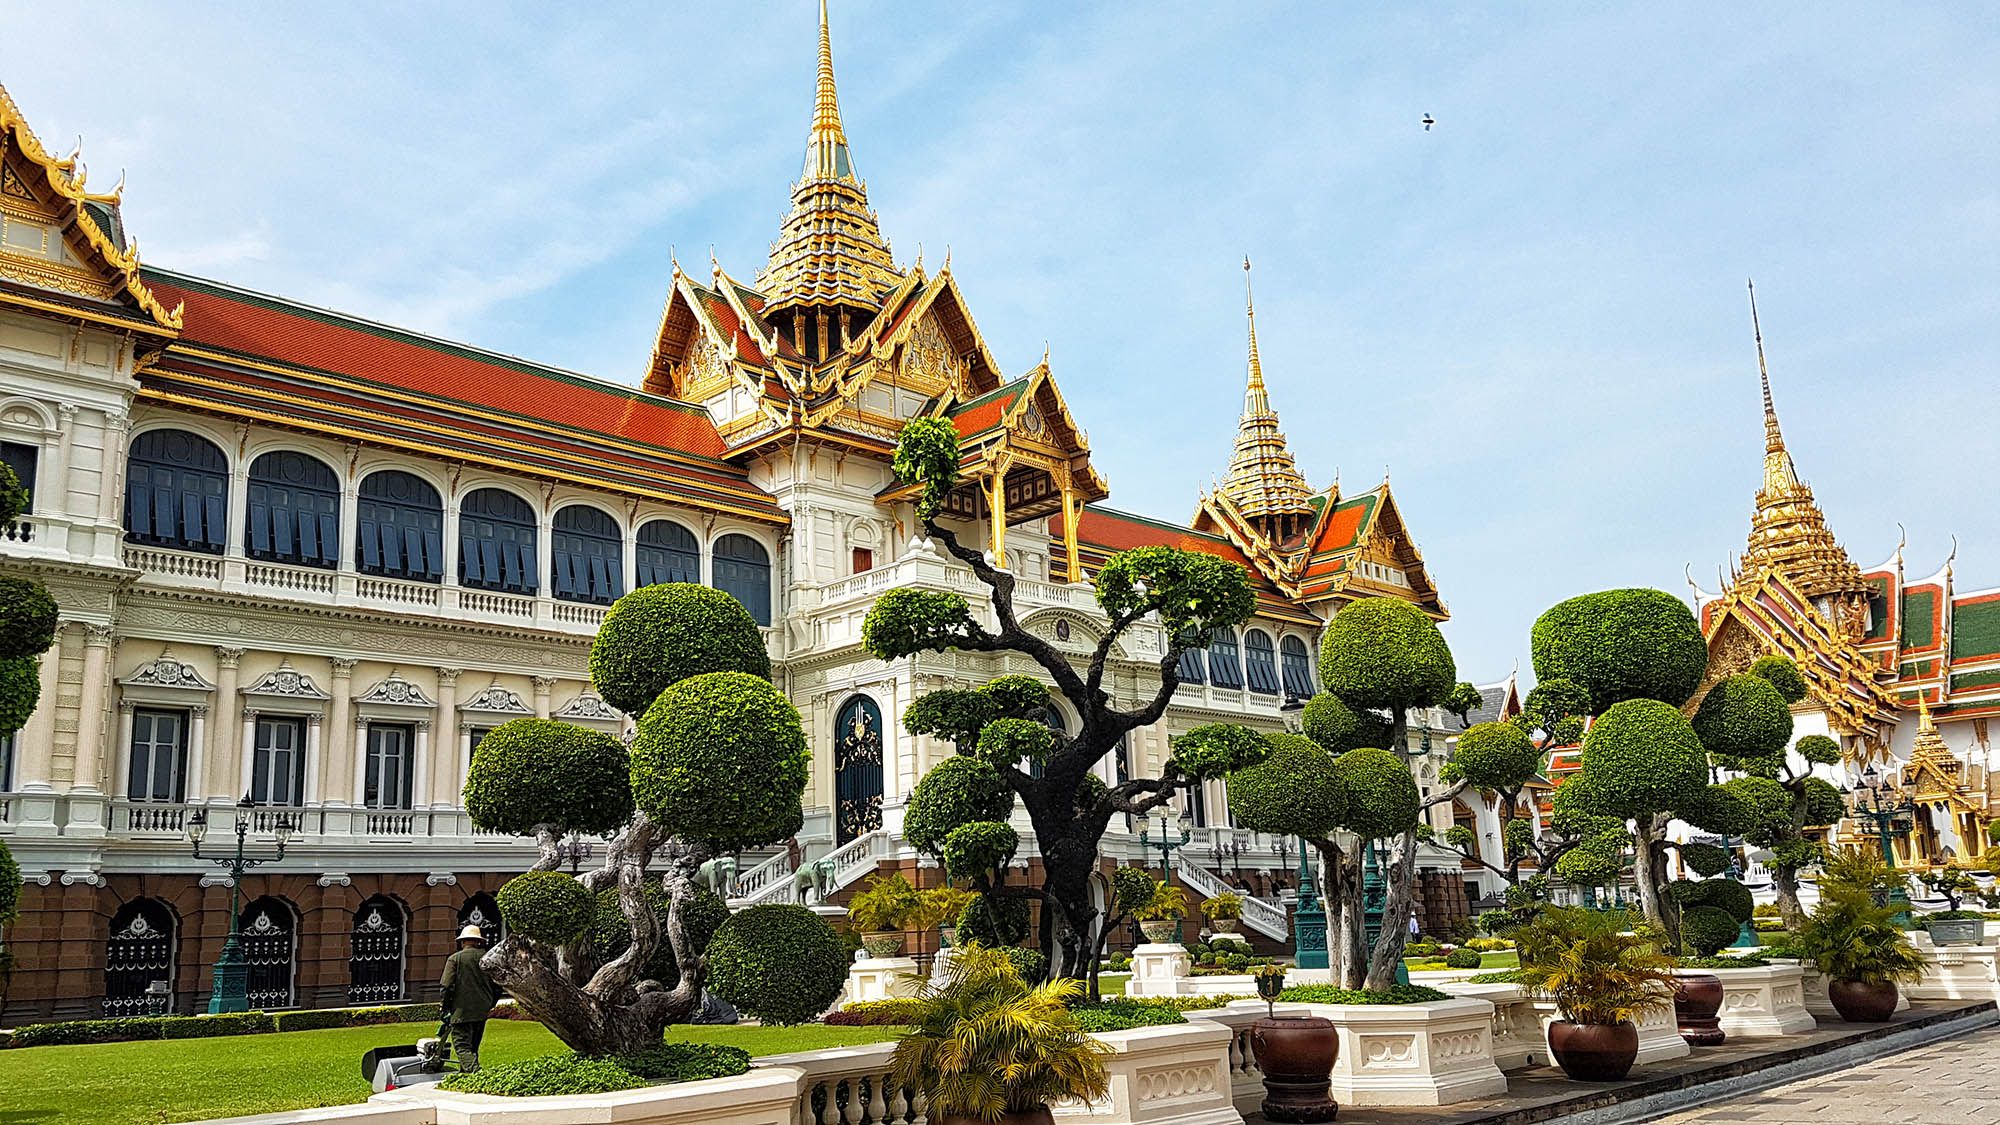 Площадь бангкока. Королевский дворец в Бангкоке. Тайланд Бангкок. Бангкок архитектура. Достопримечательности Тайланда Бангкок.